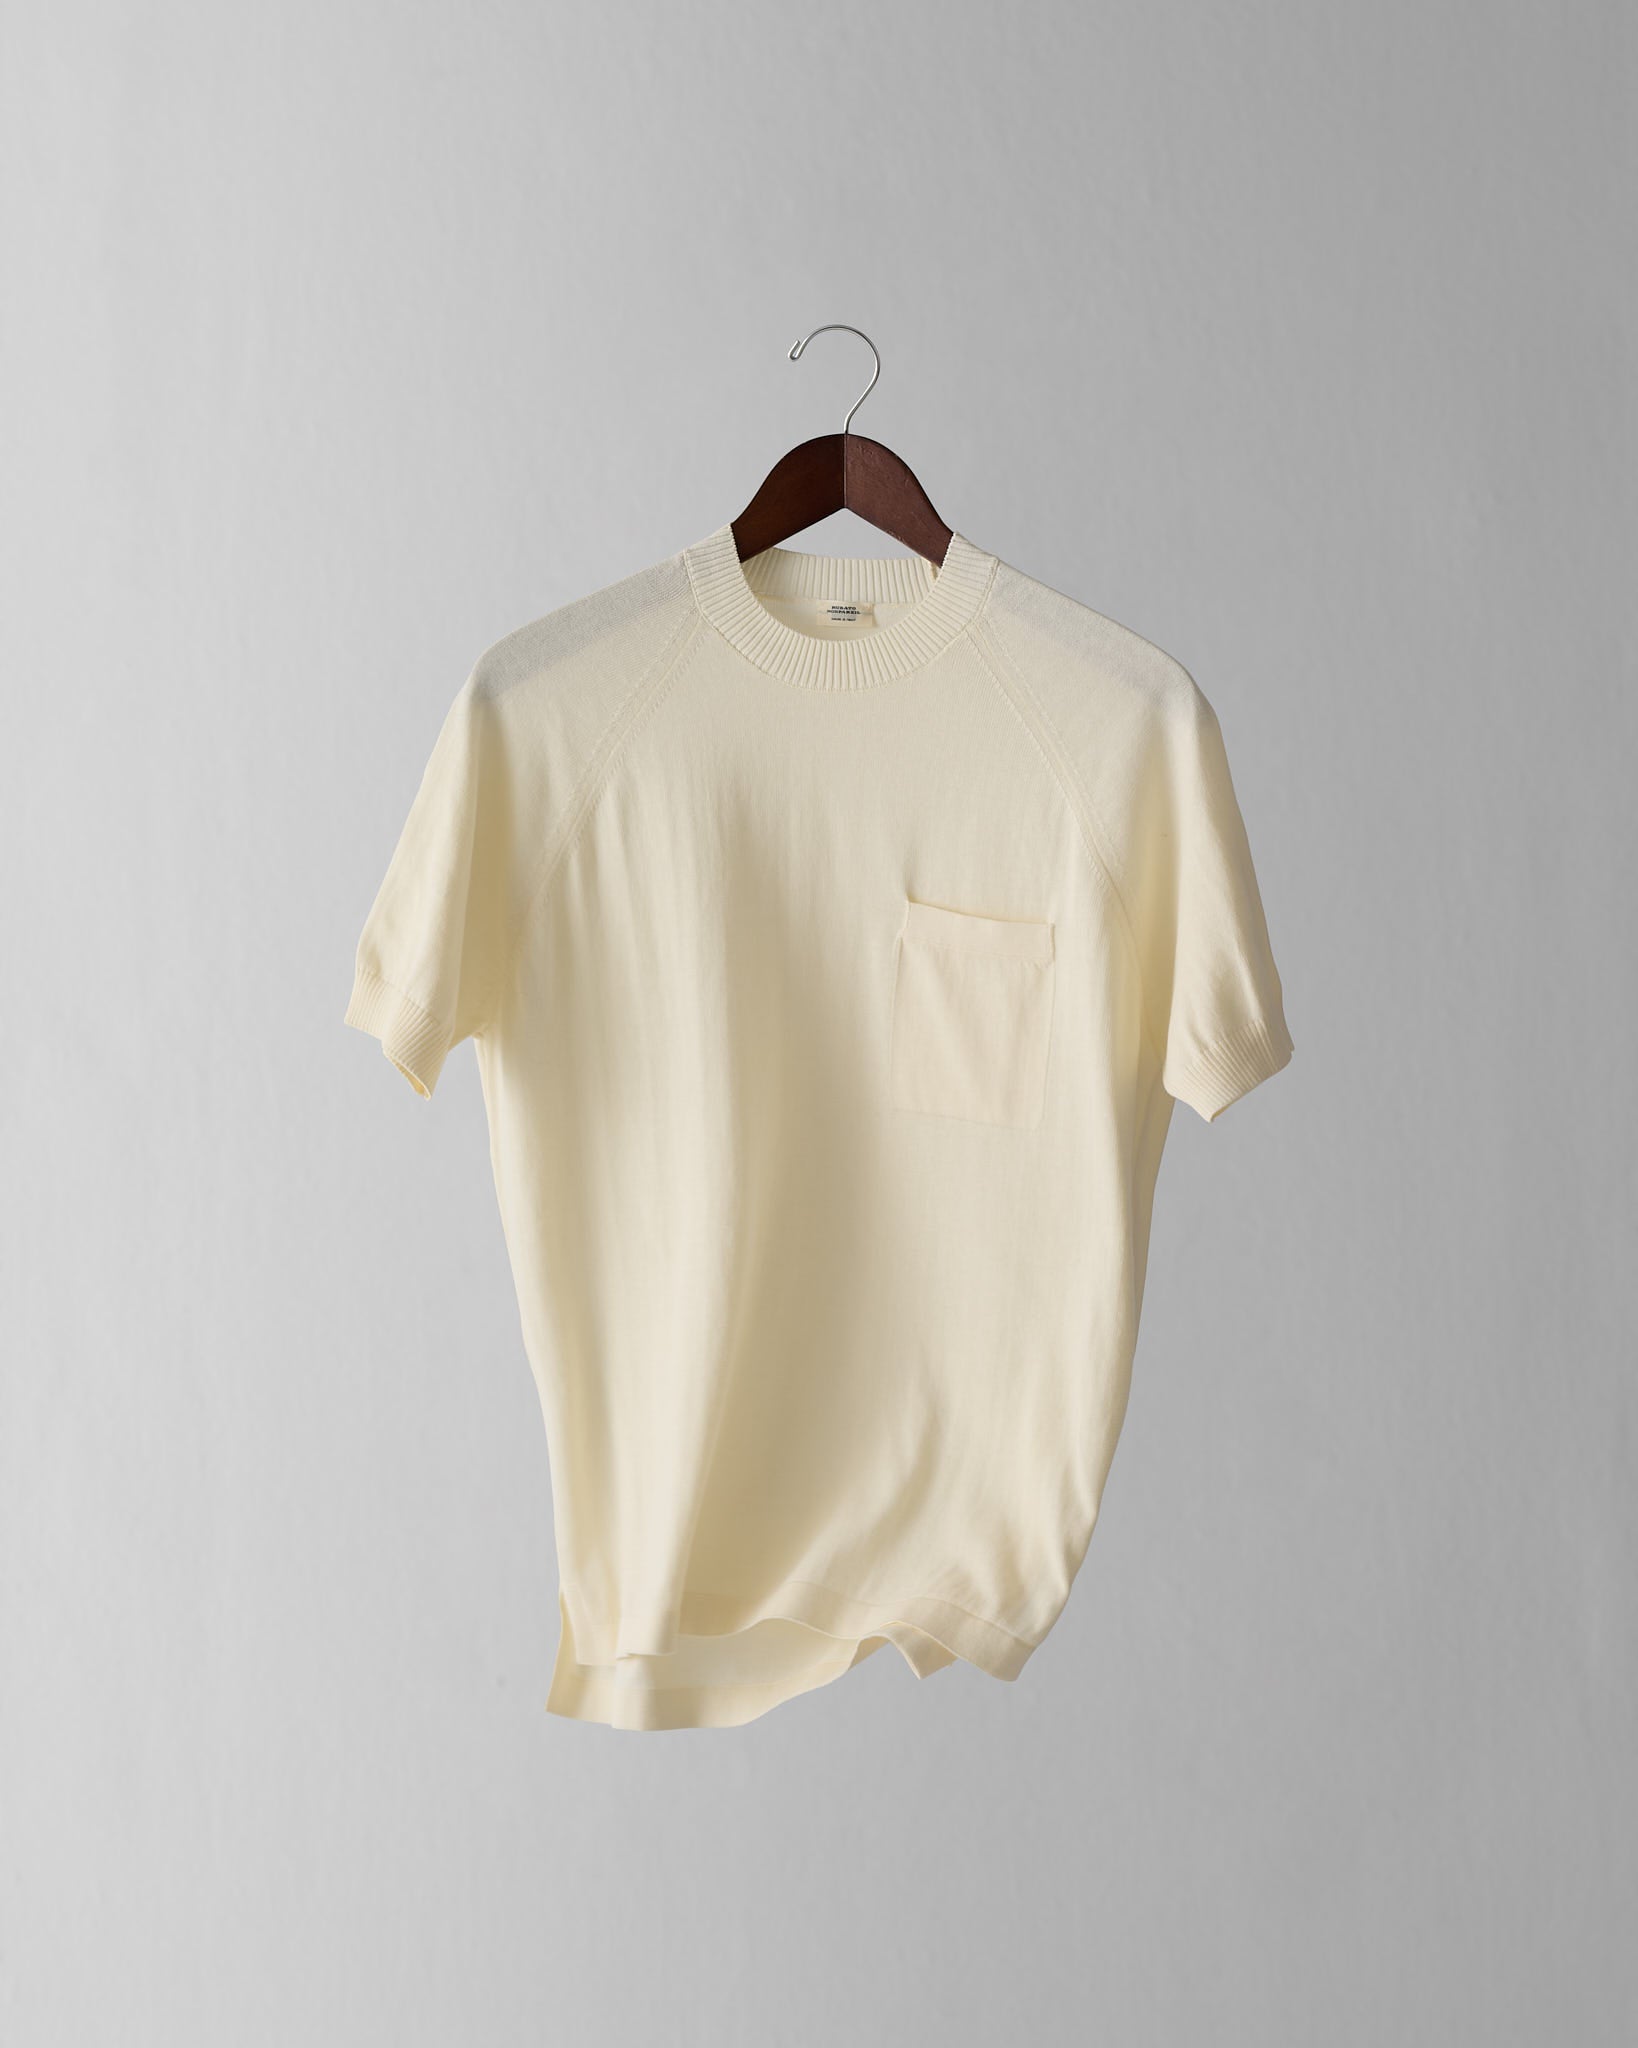 Nonpareil Raglan T-shirt in Nuage